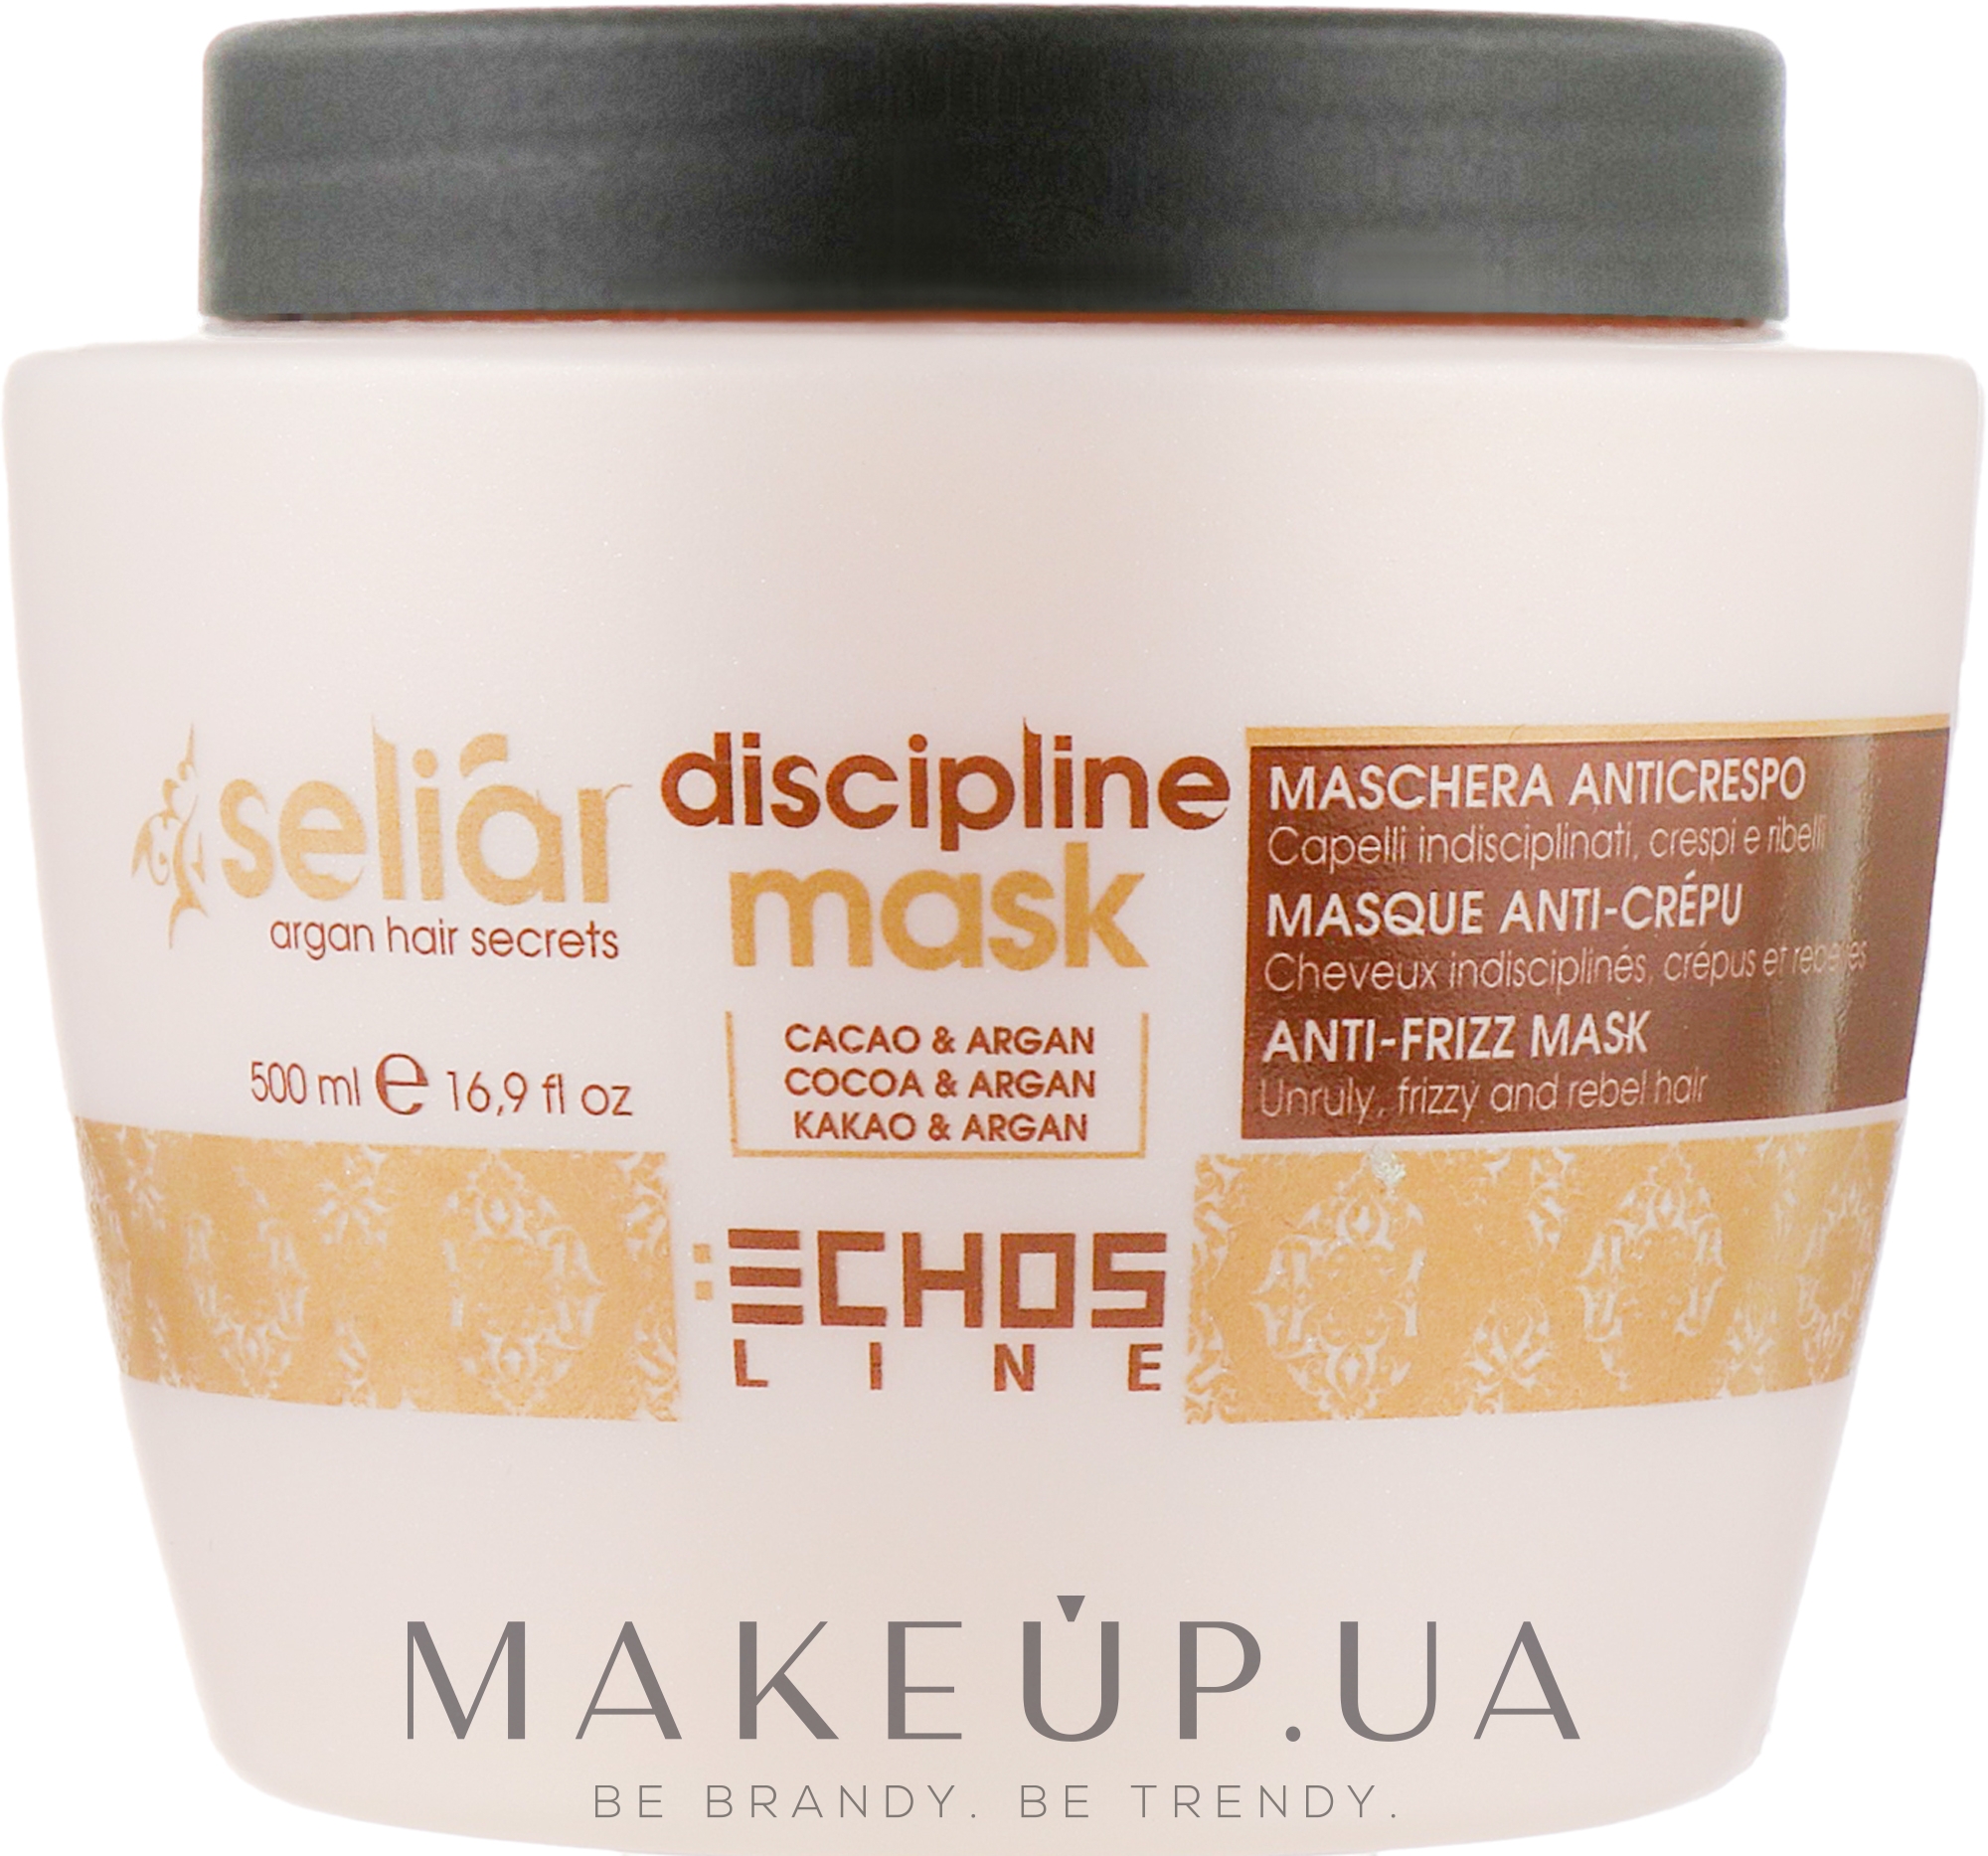 Маска для непослушных волос - Echosline Seliar Discipline Mask — фото 500ml